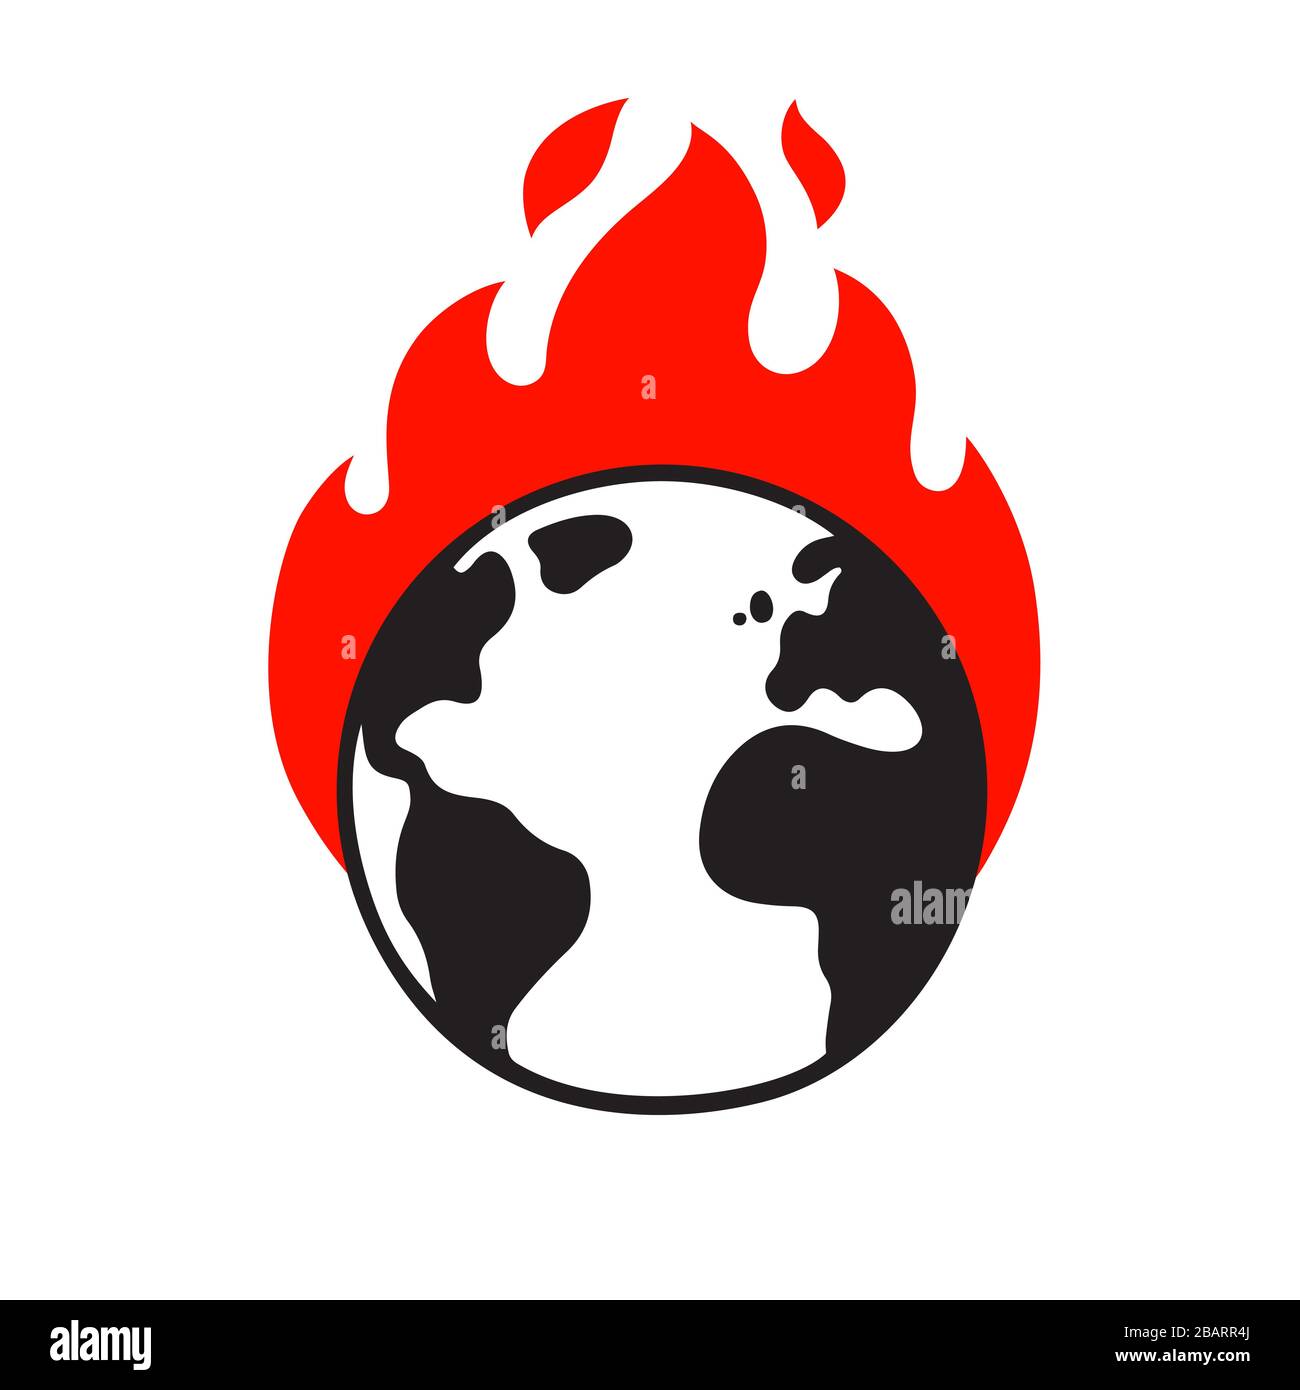 Planet Erde in Brand, Klimaerwärmung und Klimakrise zeichnen sich ab. Umwelt und Ökologie Vektorgrafik. Stock Vektor